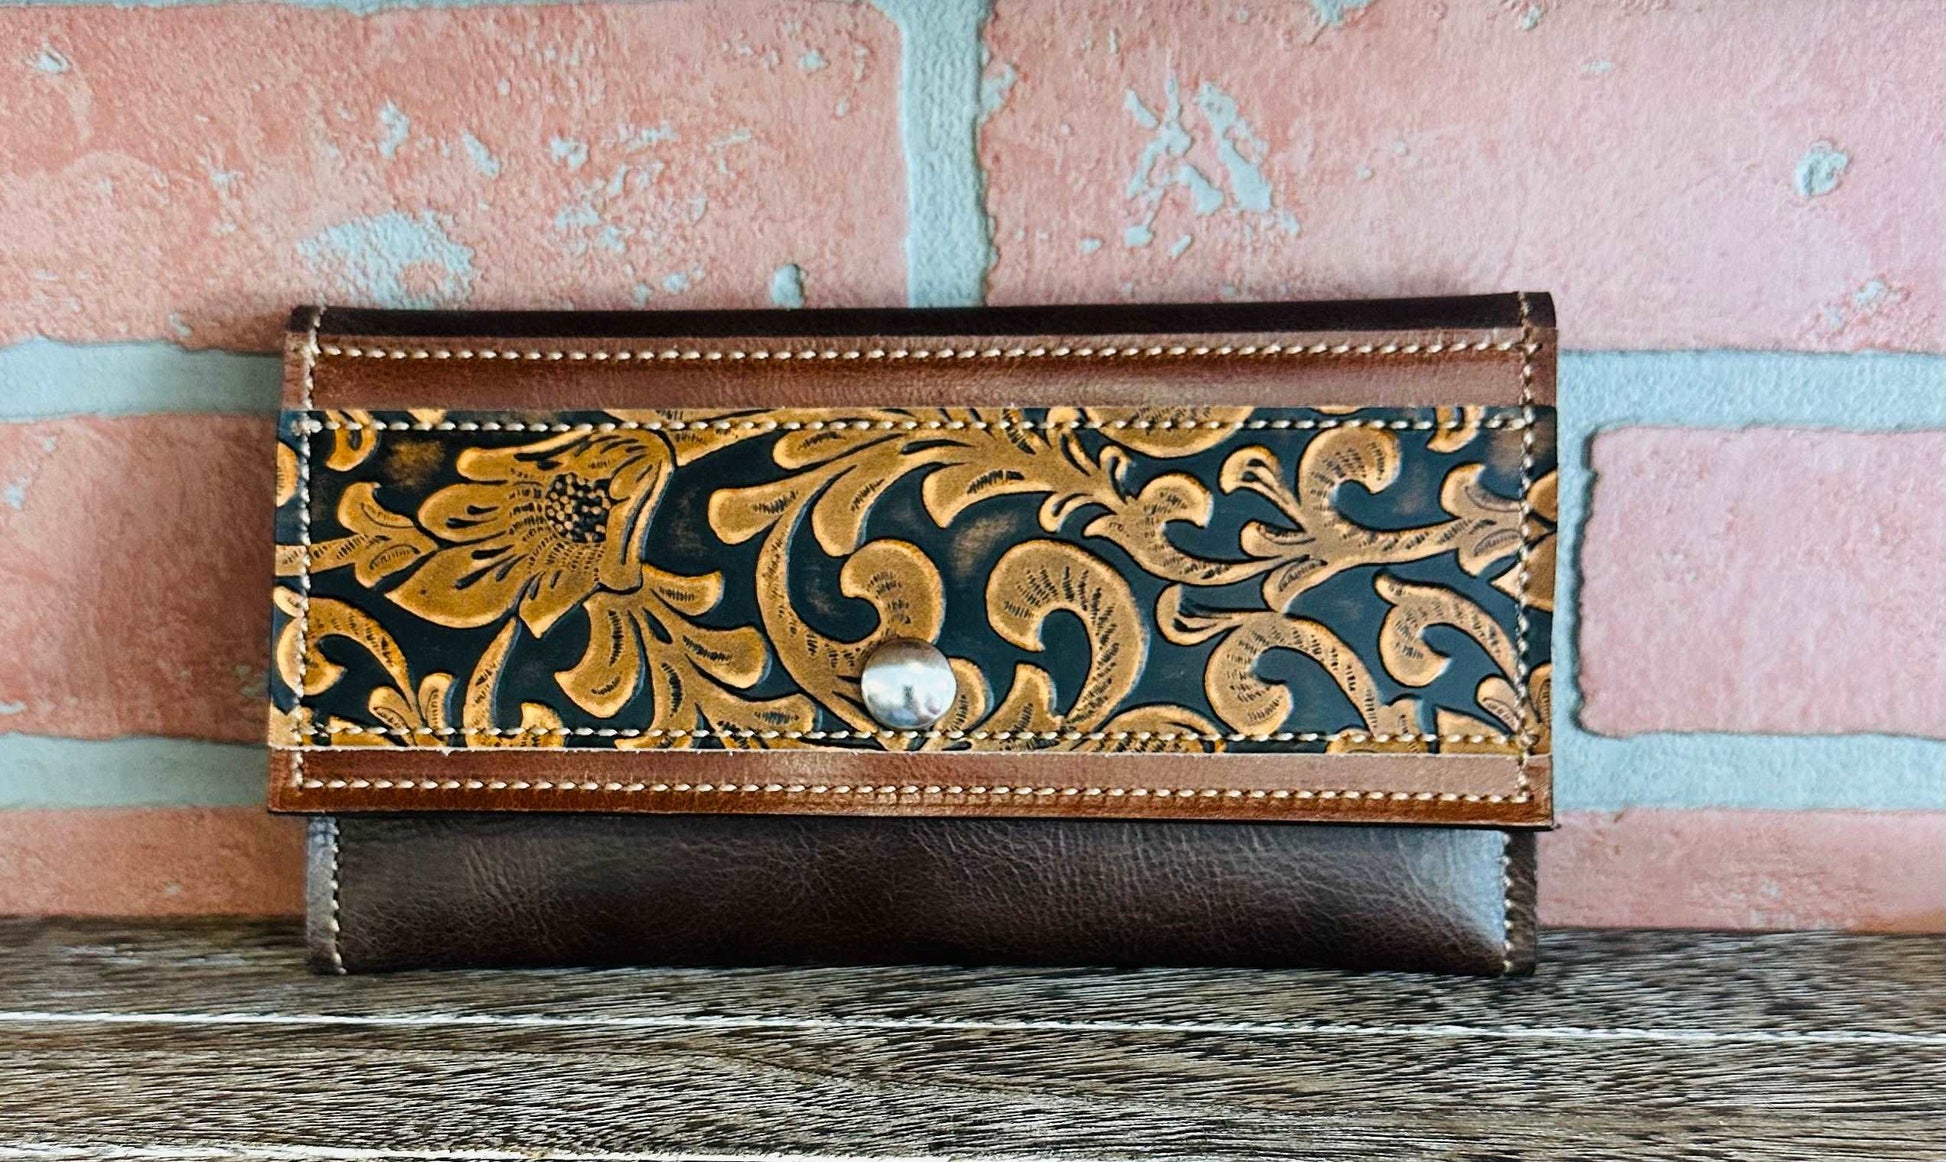 Full-Sized Wallet